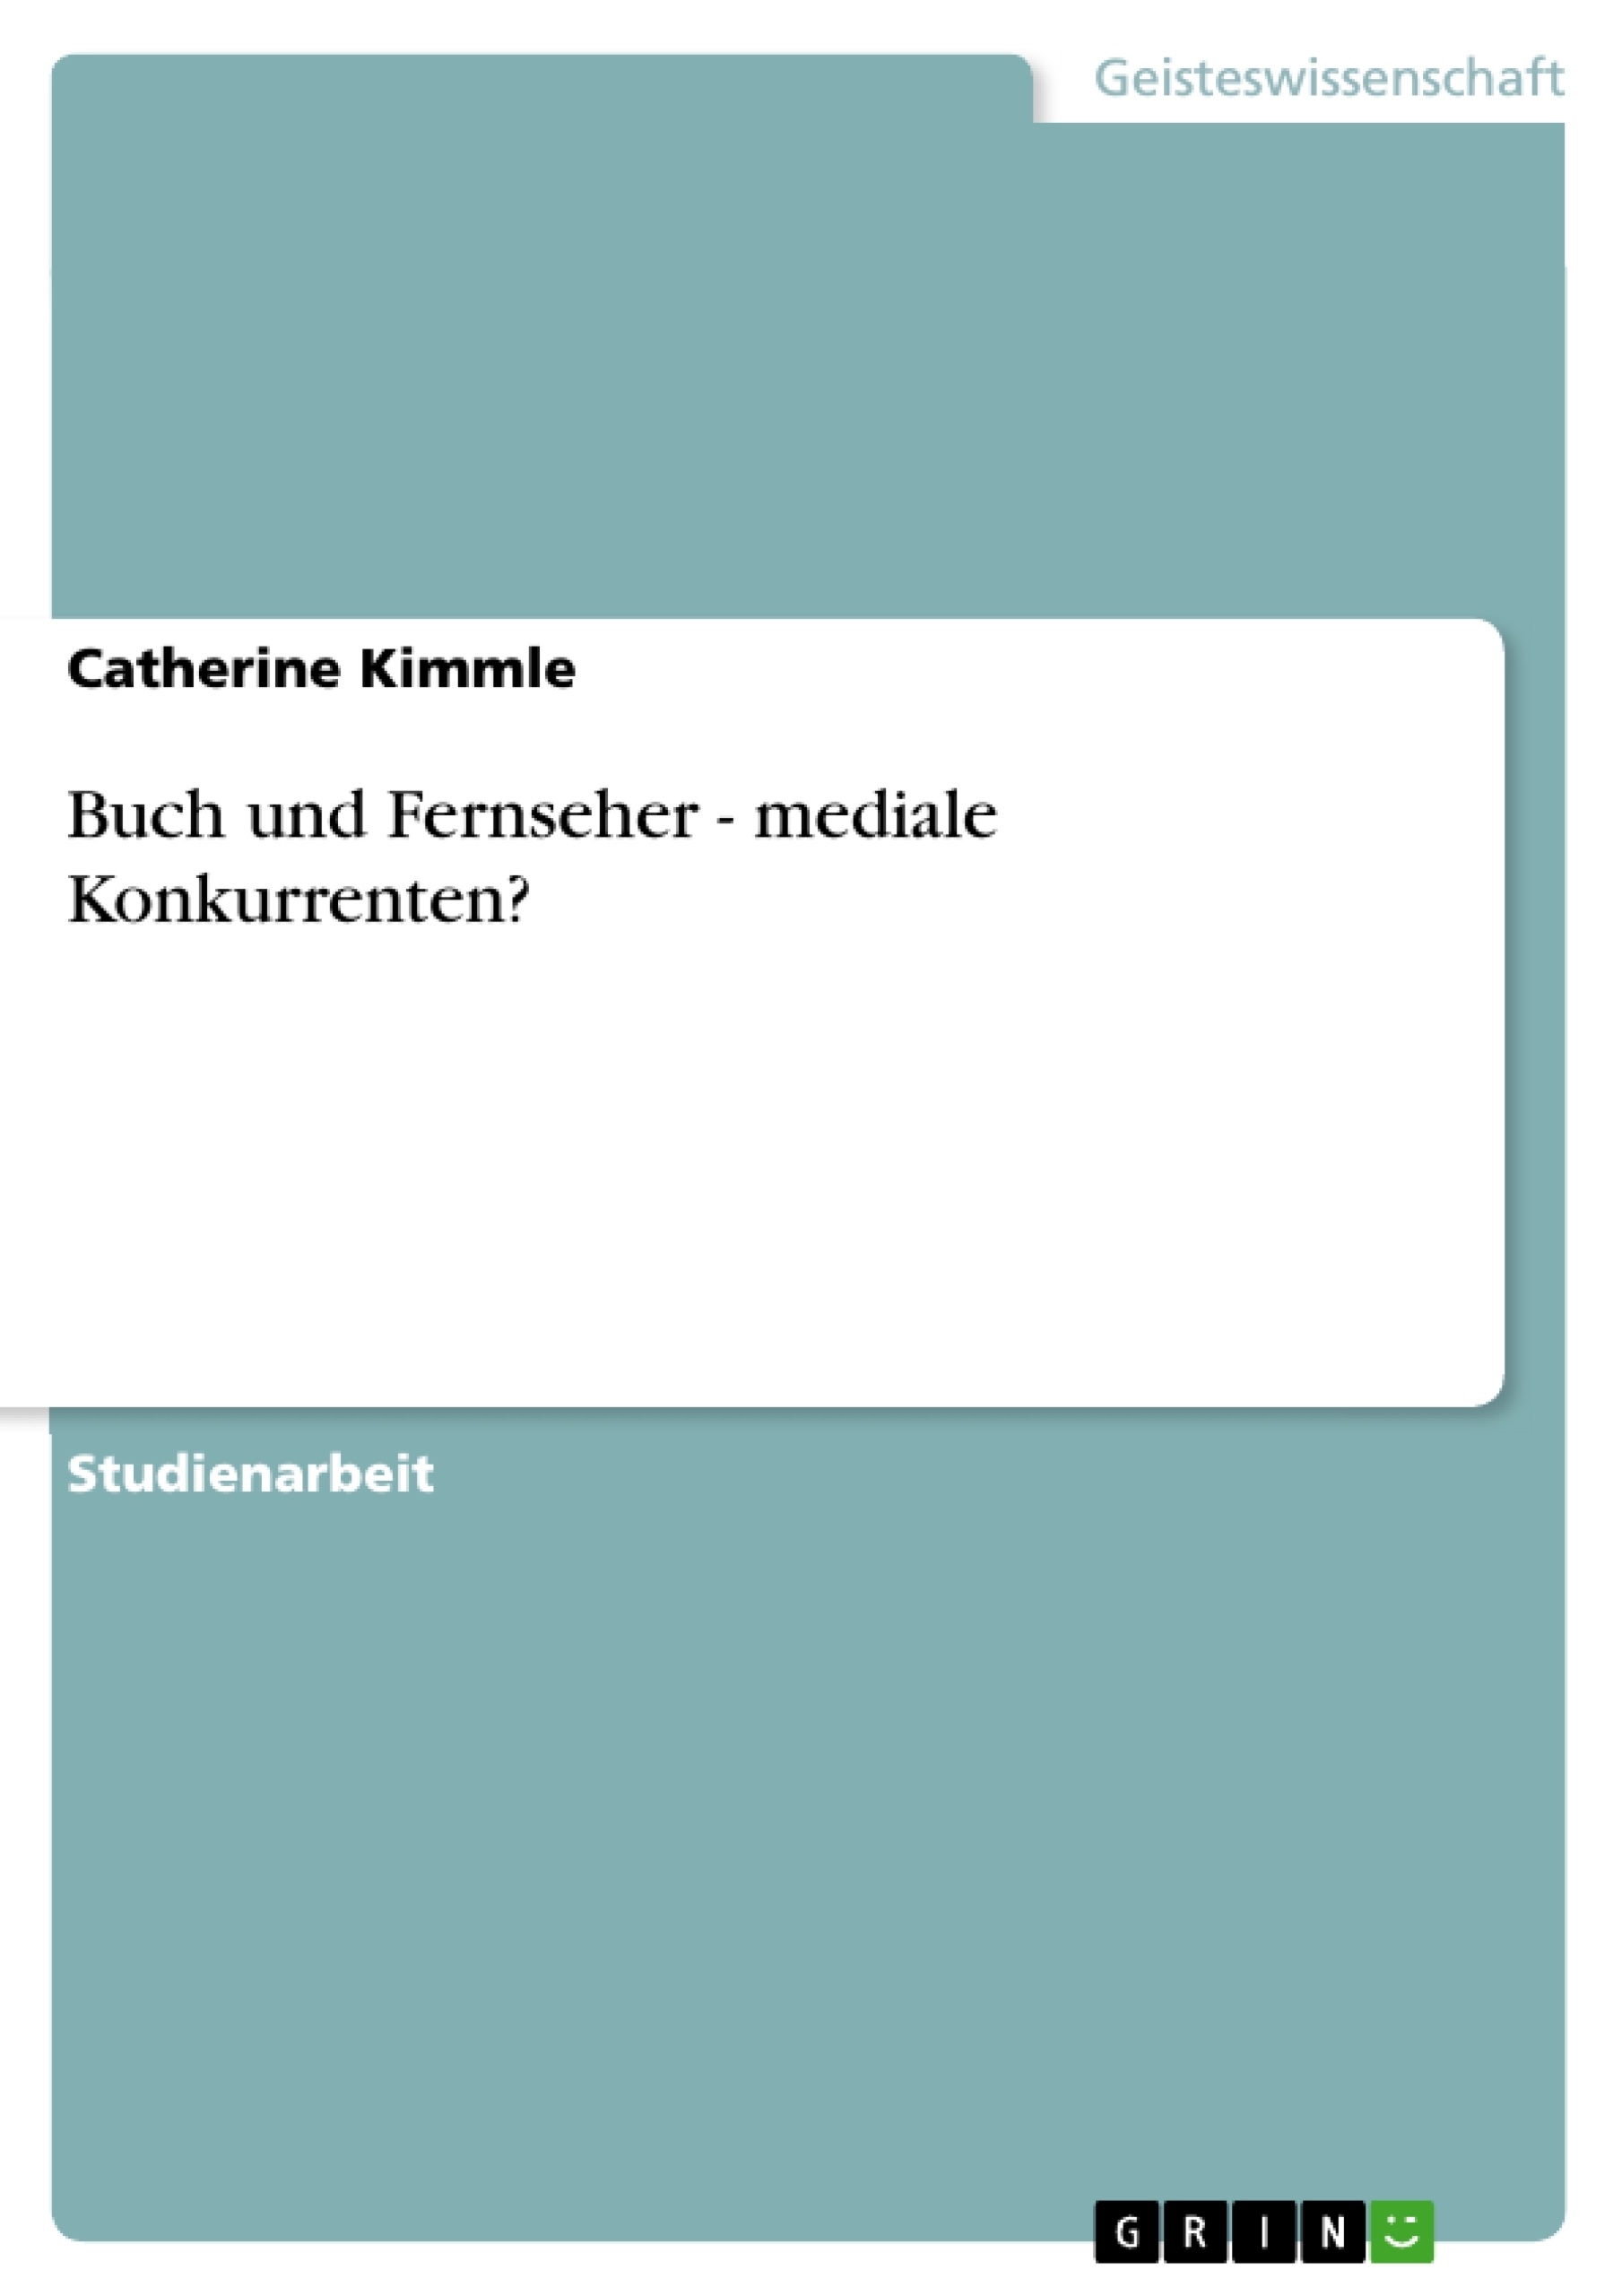 Título: Buch und Fernseher - mediale Konkurrenten?